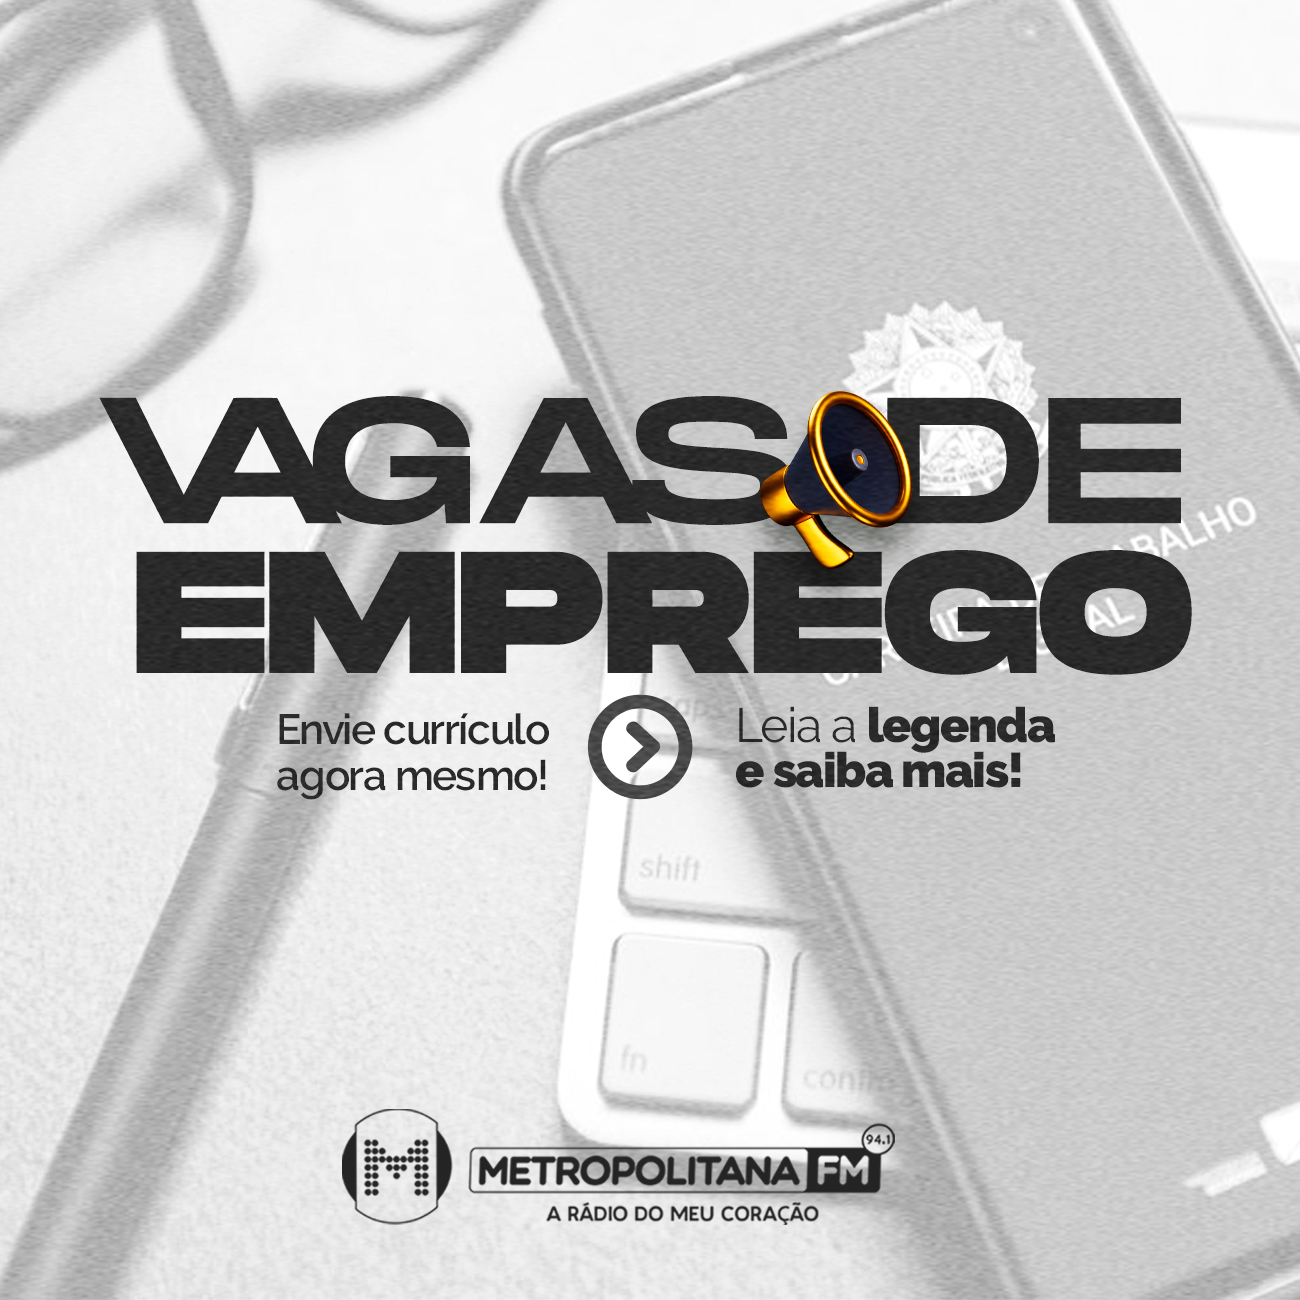 vagas-emprego-caruaru-região-oportunidade-agencia